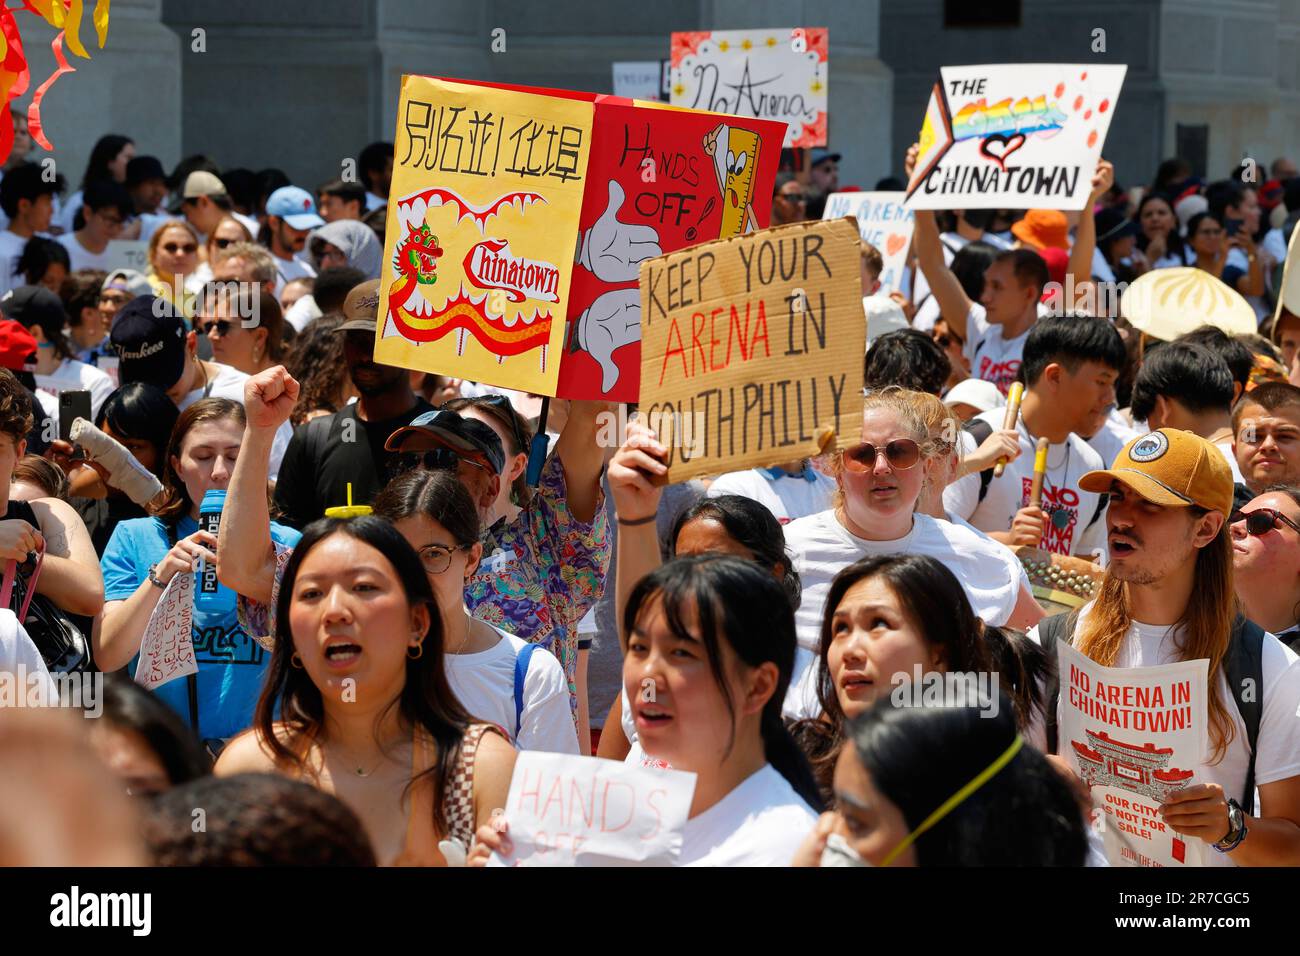 10. Juni 2023, Philadelphia. Keine Arena in Chinatown protestmarsch. Im Rathaus versammeln sich die Leute gegen das Sixers-Stadion (siehe Add'l Info). Stockfoto